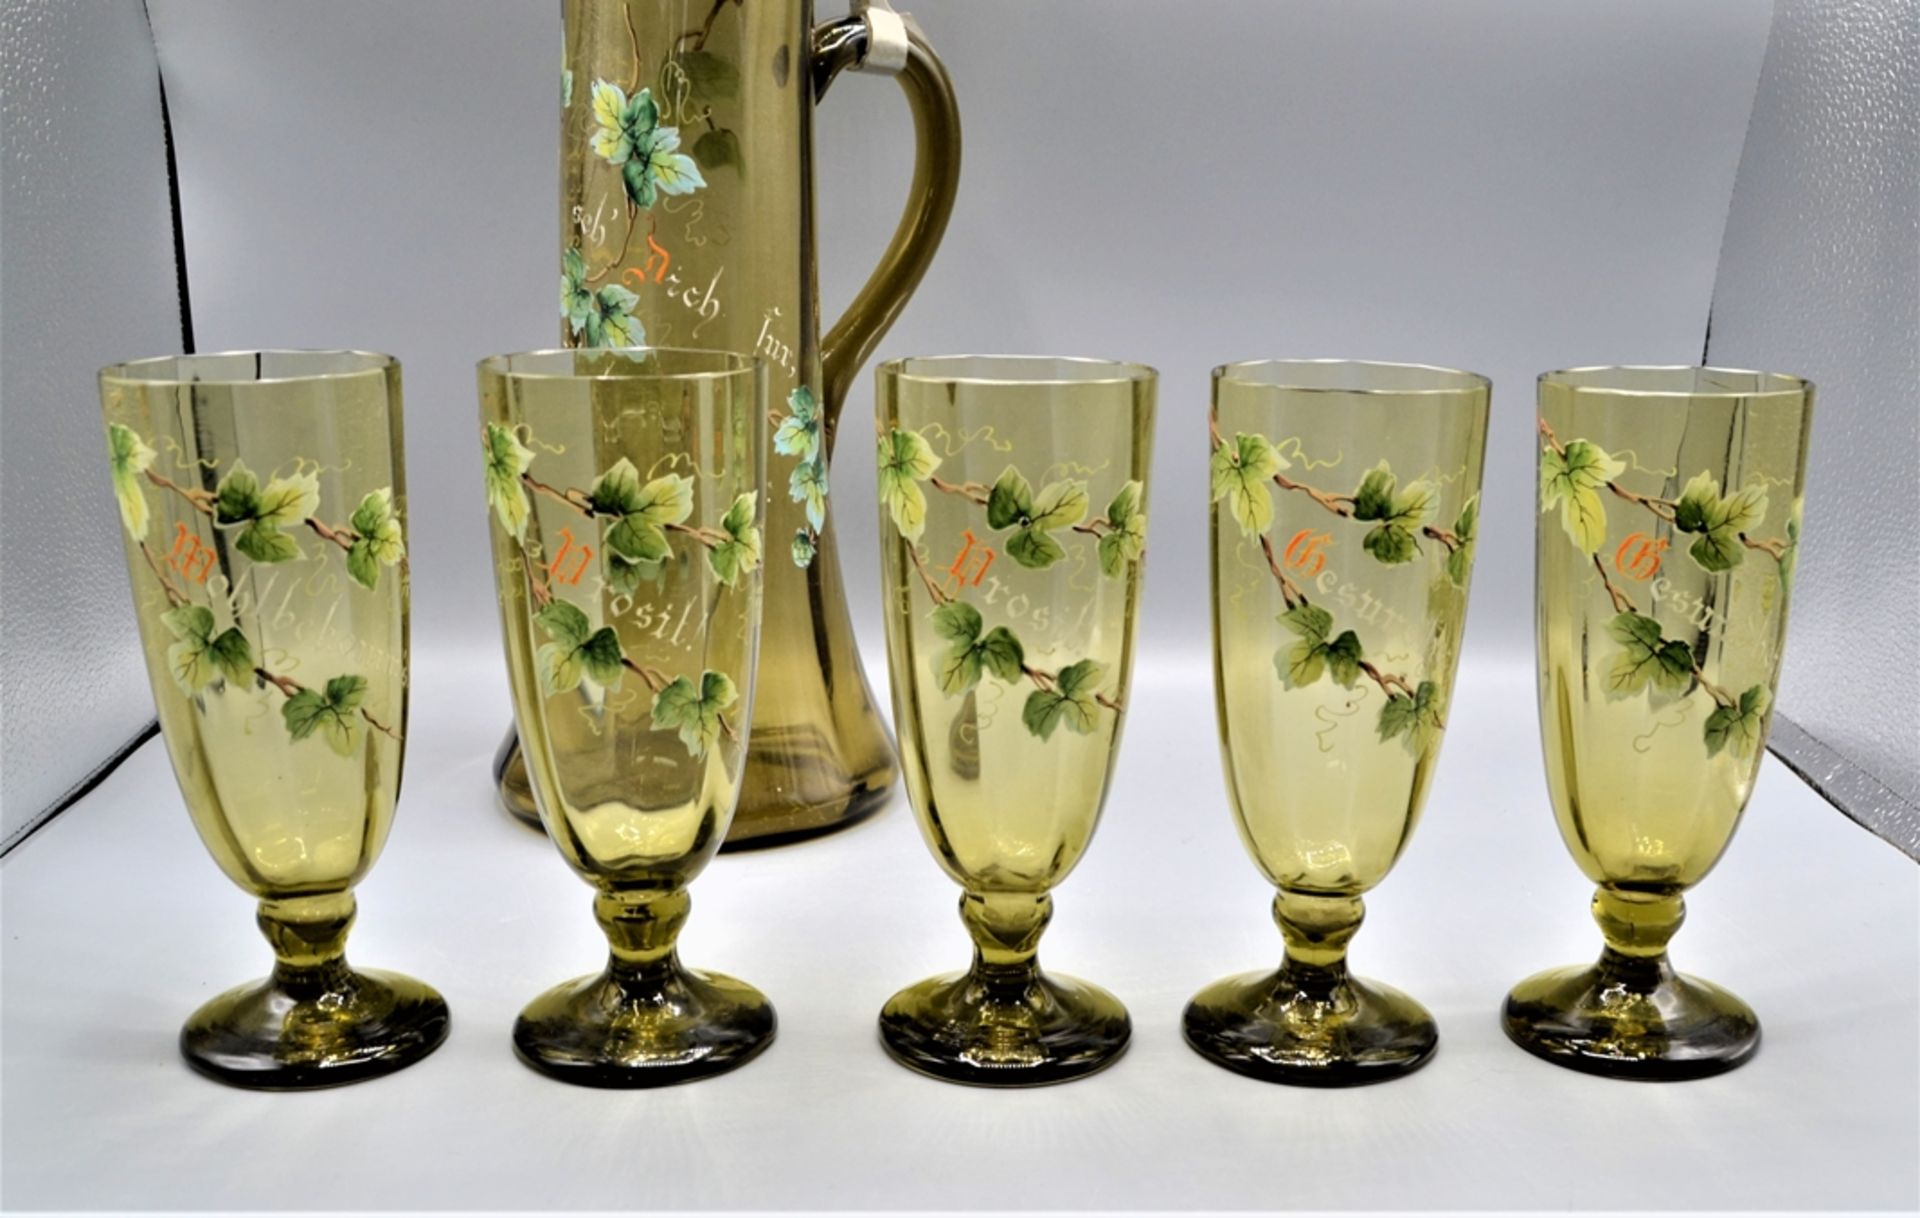 Glas Krug Schankkrug mit 5 Gläsern um 1900, emailliert mit Hopfen Stauden und Trinksprüchen, mundge - Image 3 of 3